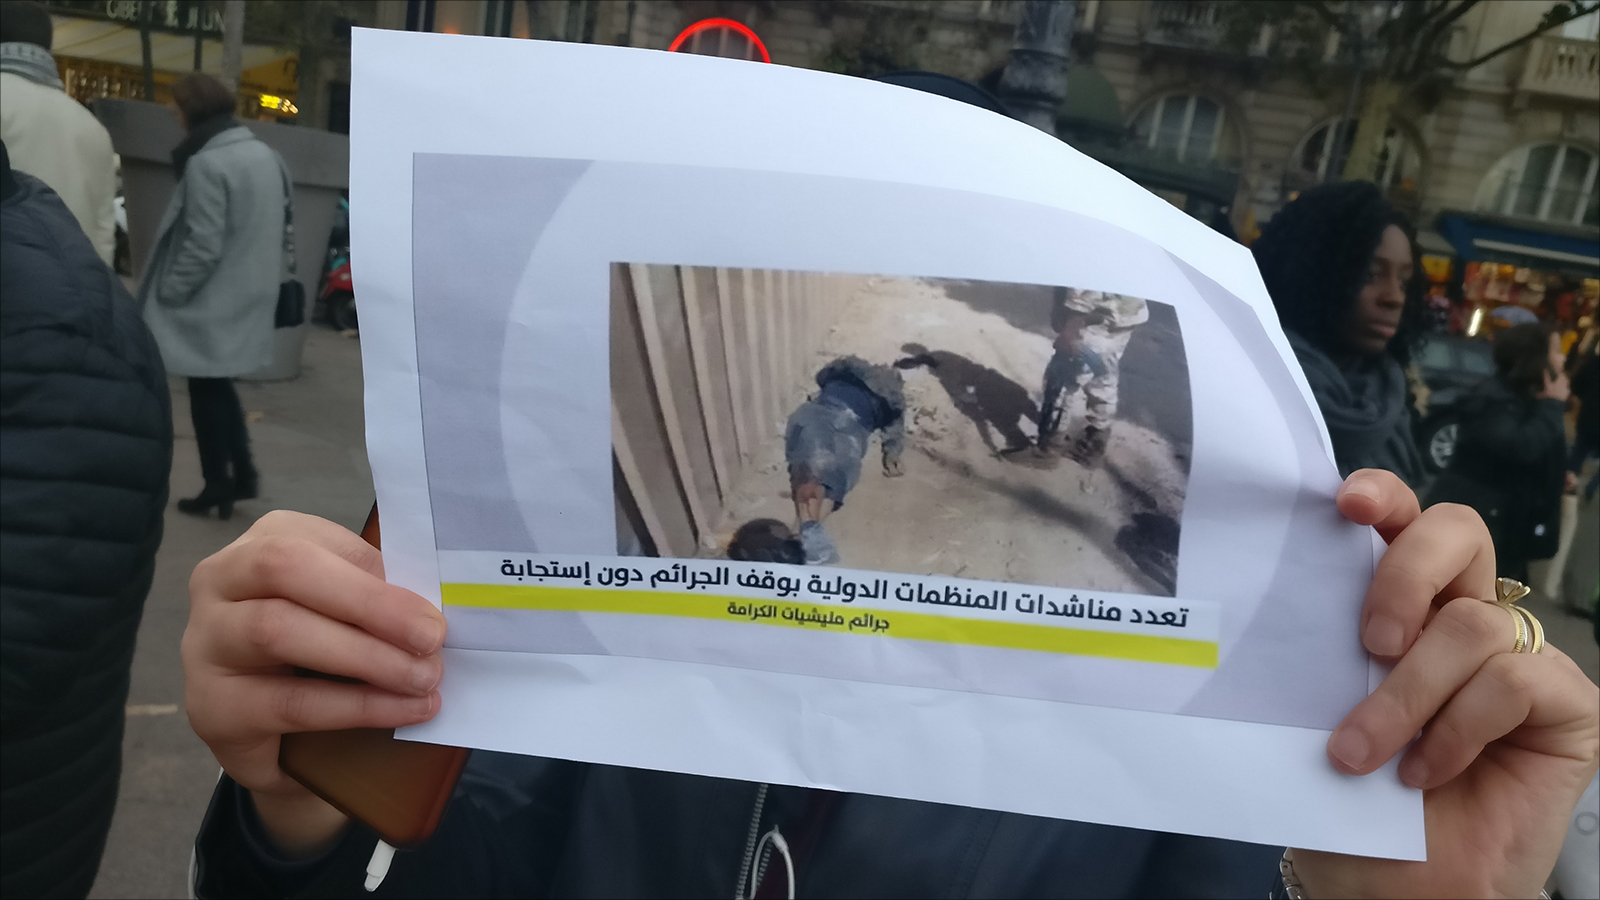 ناشطة تحمل صورة لعمليات إعدامات ميدانية نفذتها قوات حفتر في درنة ووثقتها المنظمات الحقوقية الدولية(الجزيرة)